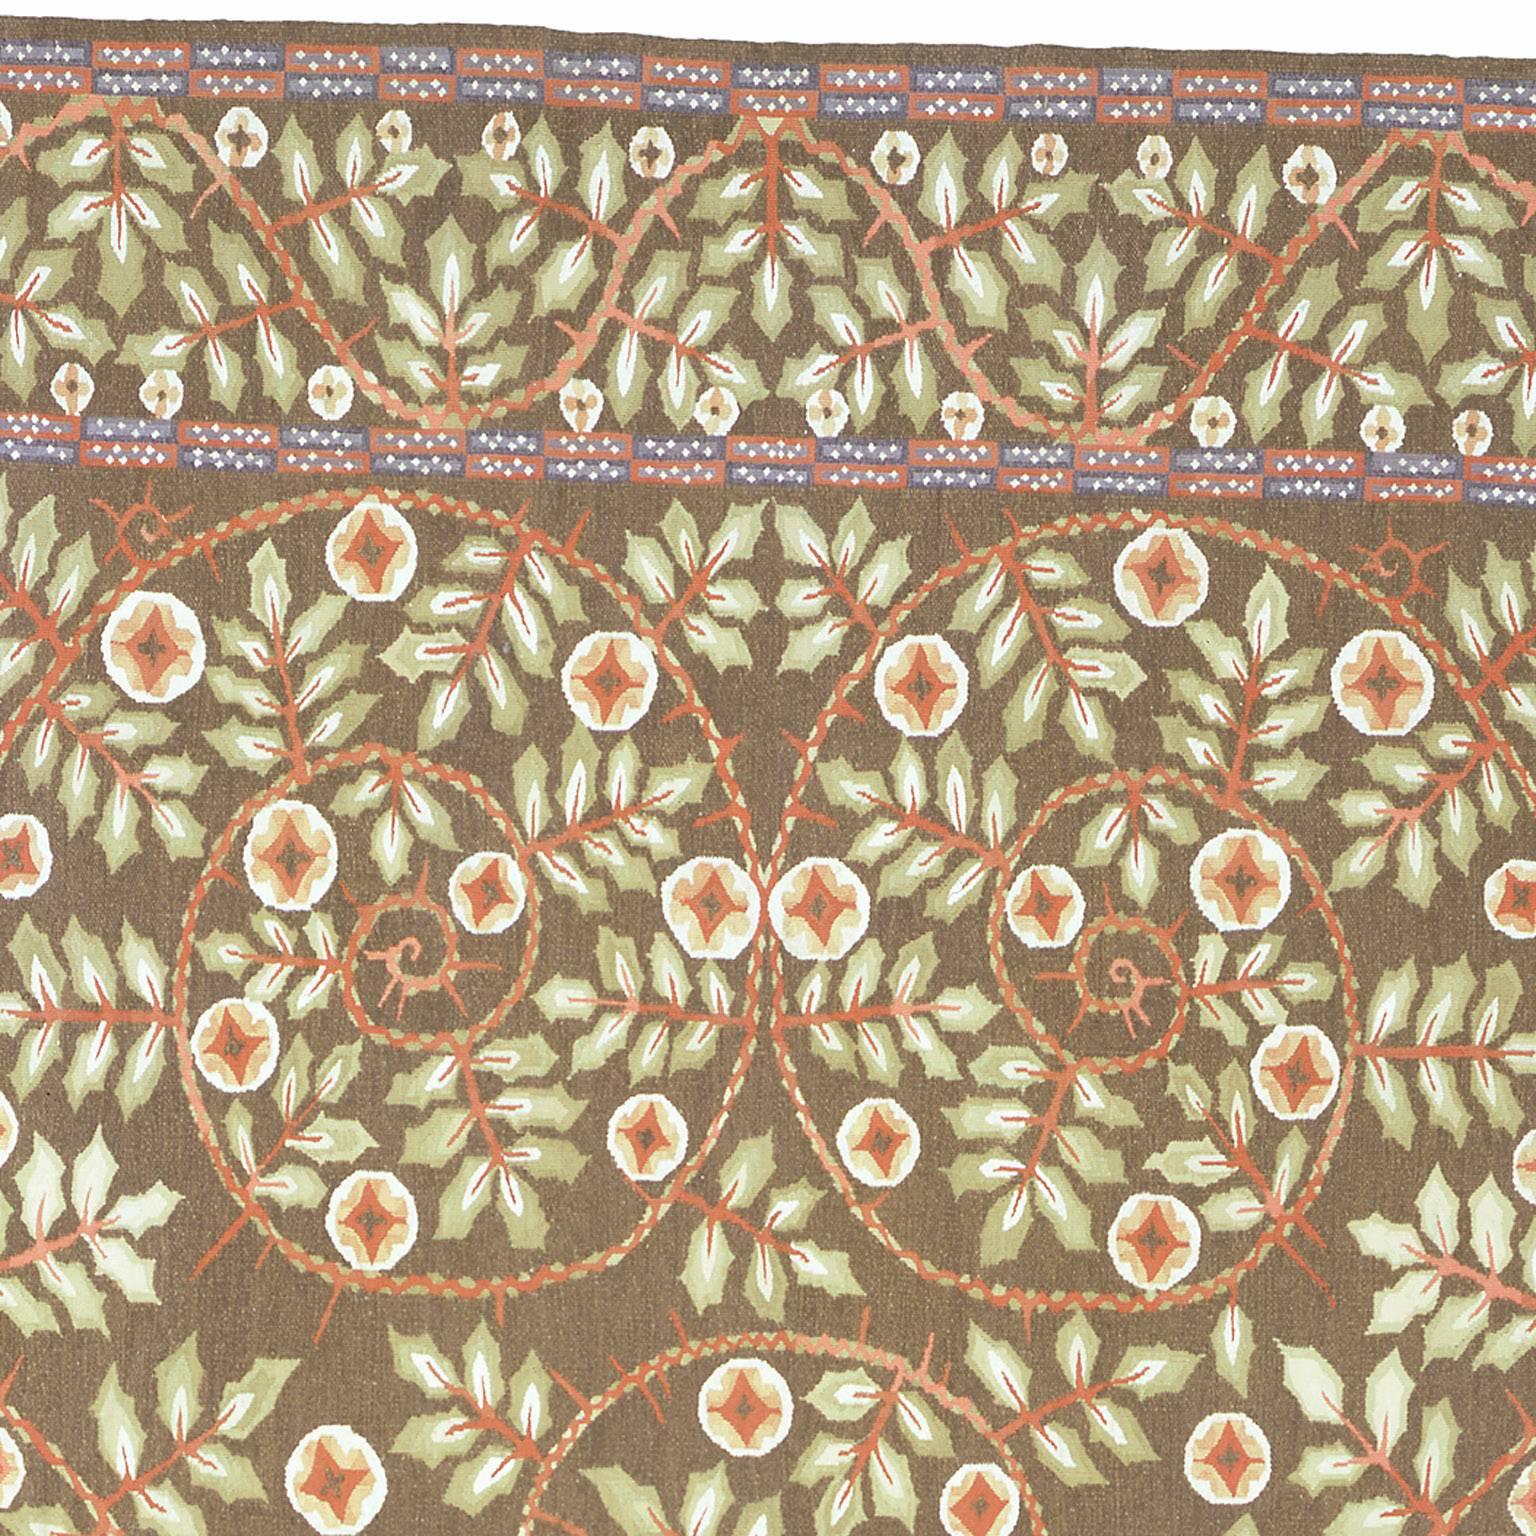 Hand-Knotted Contemporary 'Wierner Werkstatte' Carpet